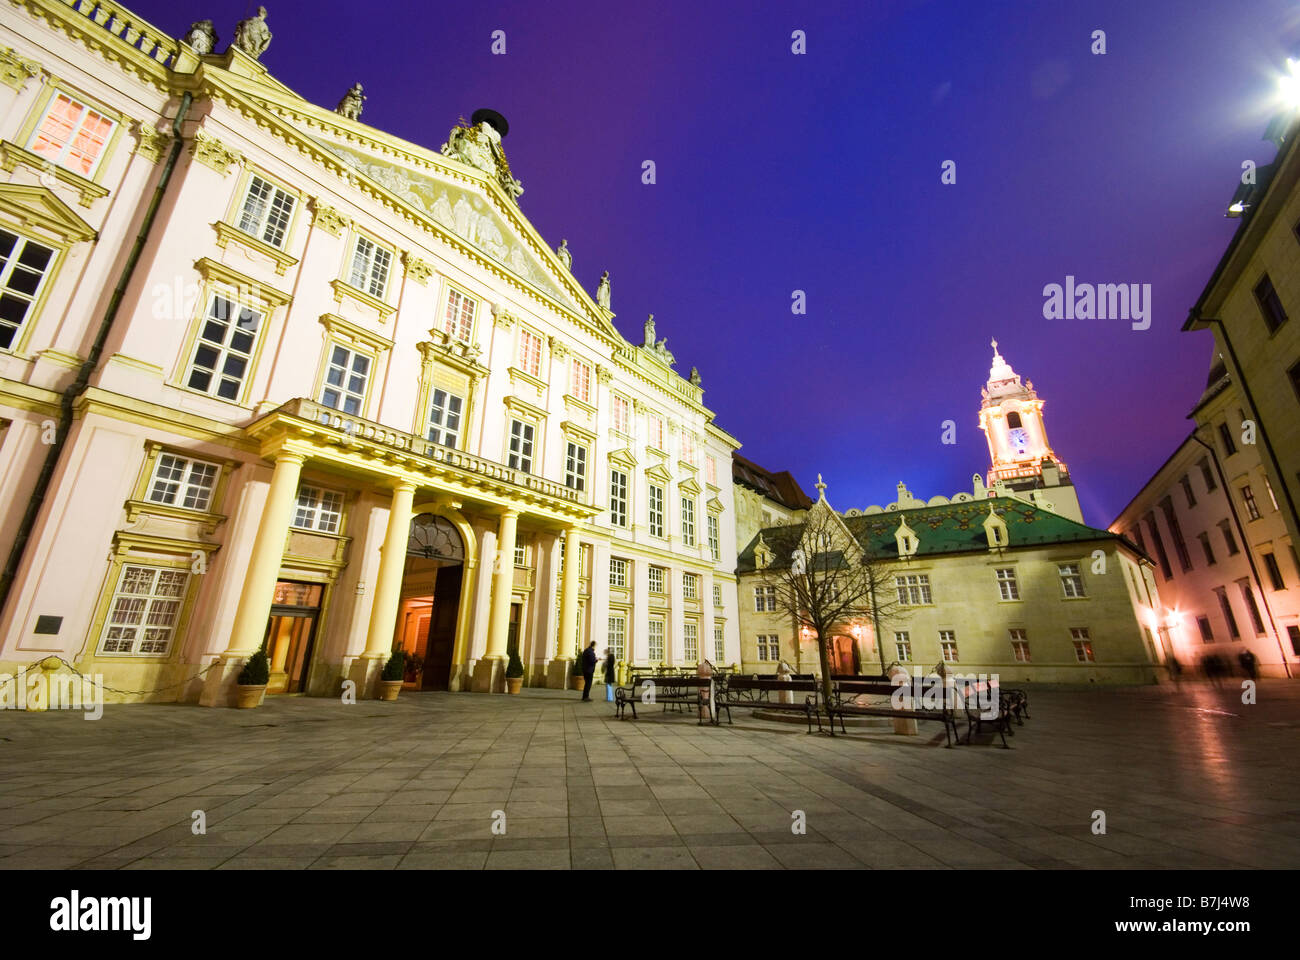 El palacio del primado (Primaciálny palác) en plaza Primaciálne rosa palacio neoclásico en Old Town, Bratislava, Eslovaquia Foto de stock